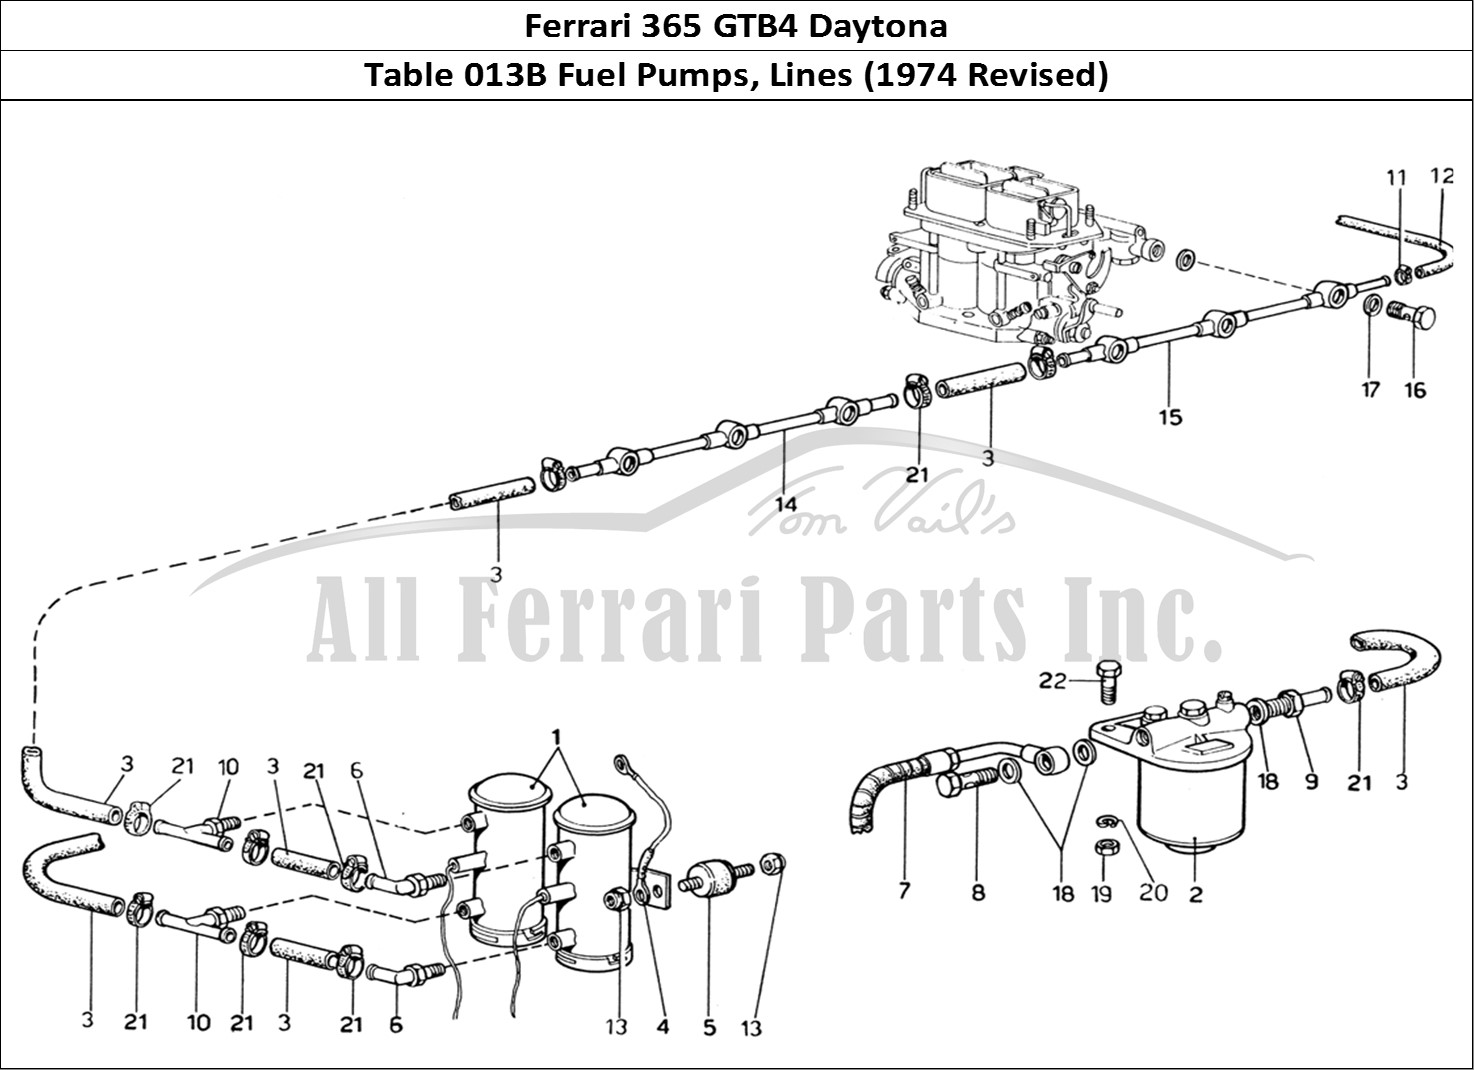 Ferrari Parts Ferrari 365 GTB4 Daytona (1969) Page 013 Fuel Pumps & Fuel Pipes (